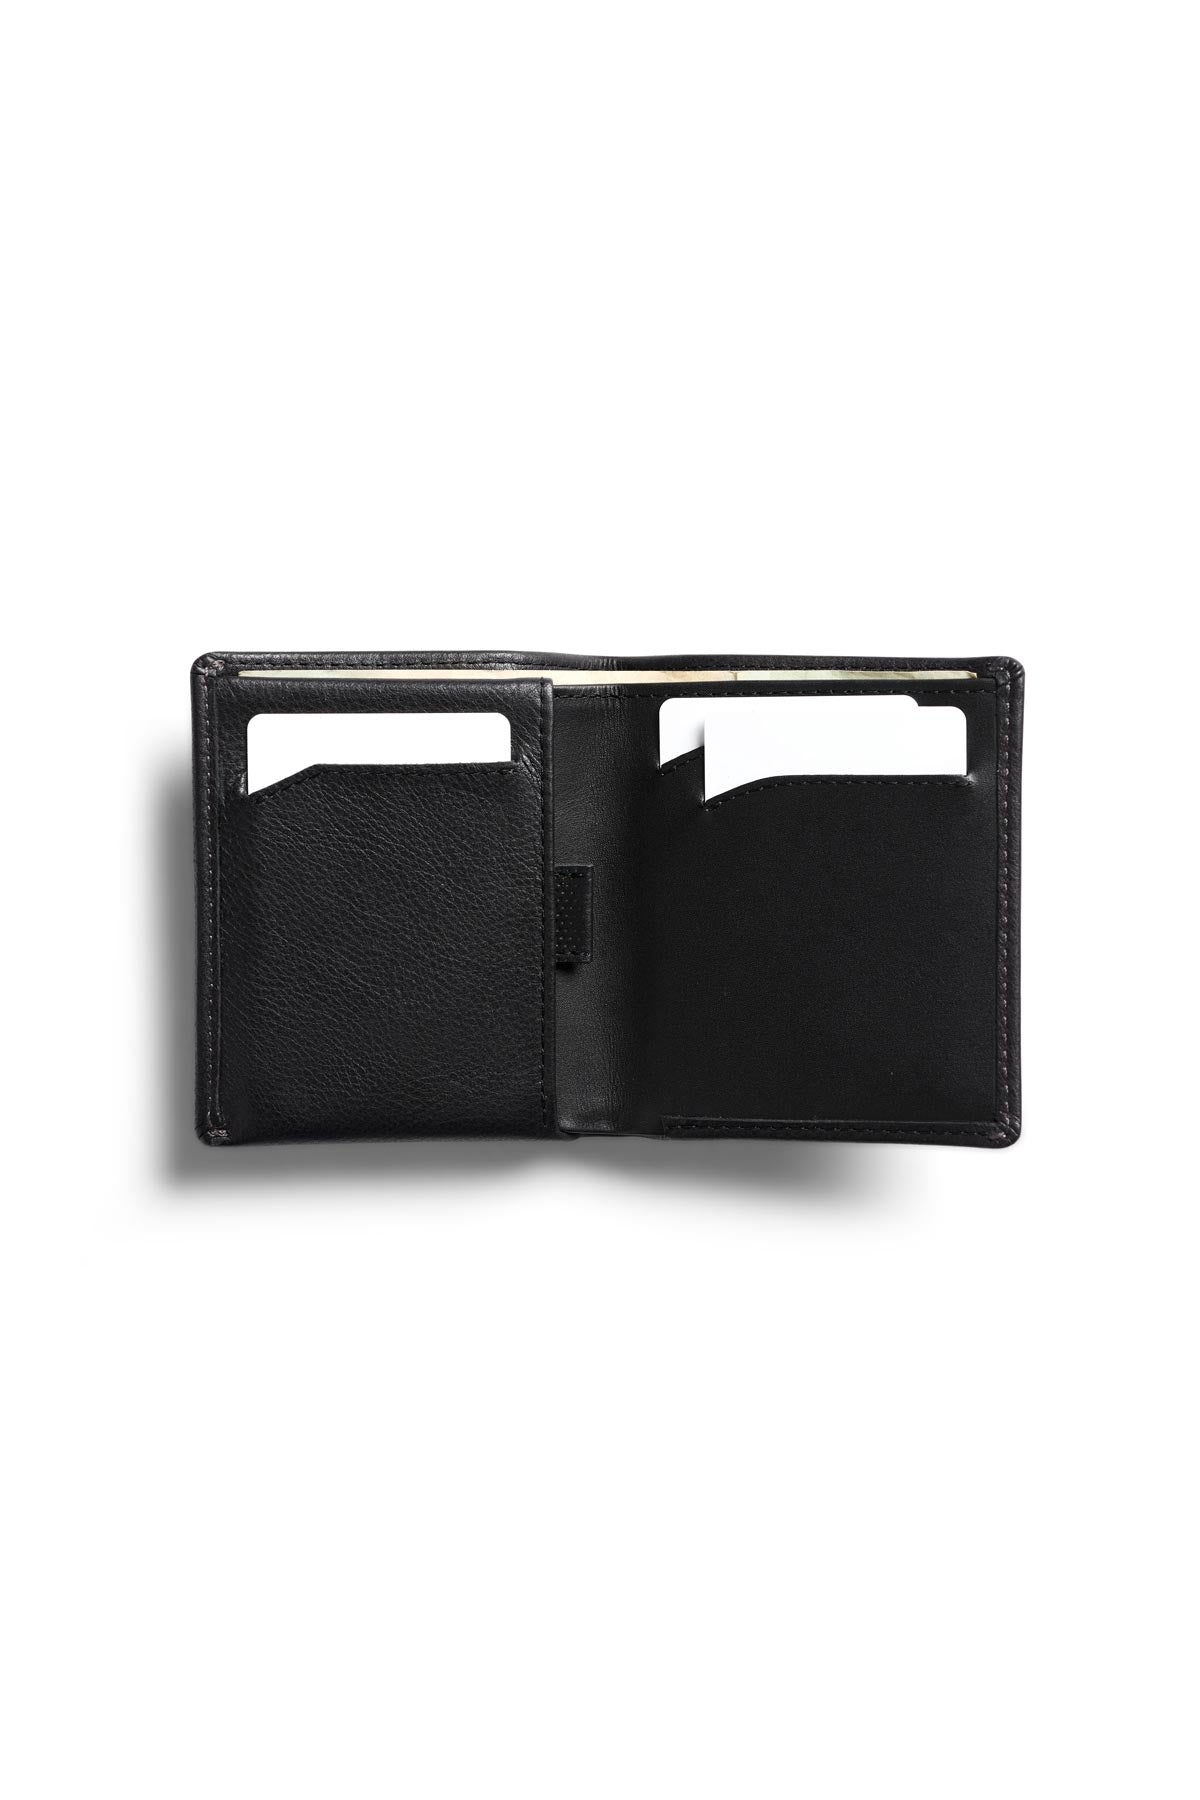 Bellroy - RFID Note Sleeve Wallet - Obsidian - Inside